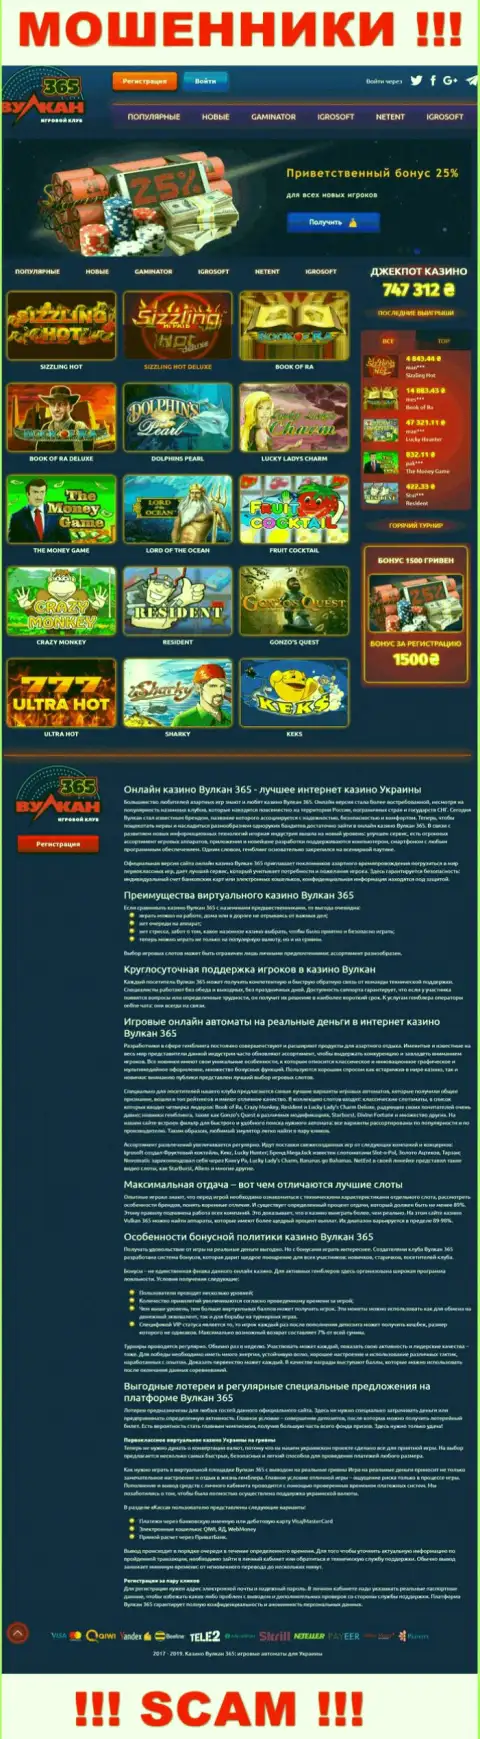 Официальный сайт Vulkan365 - это яркая страница для привлечения лохов